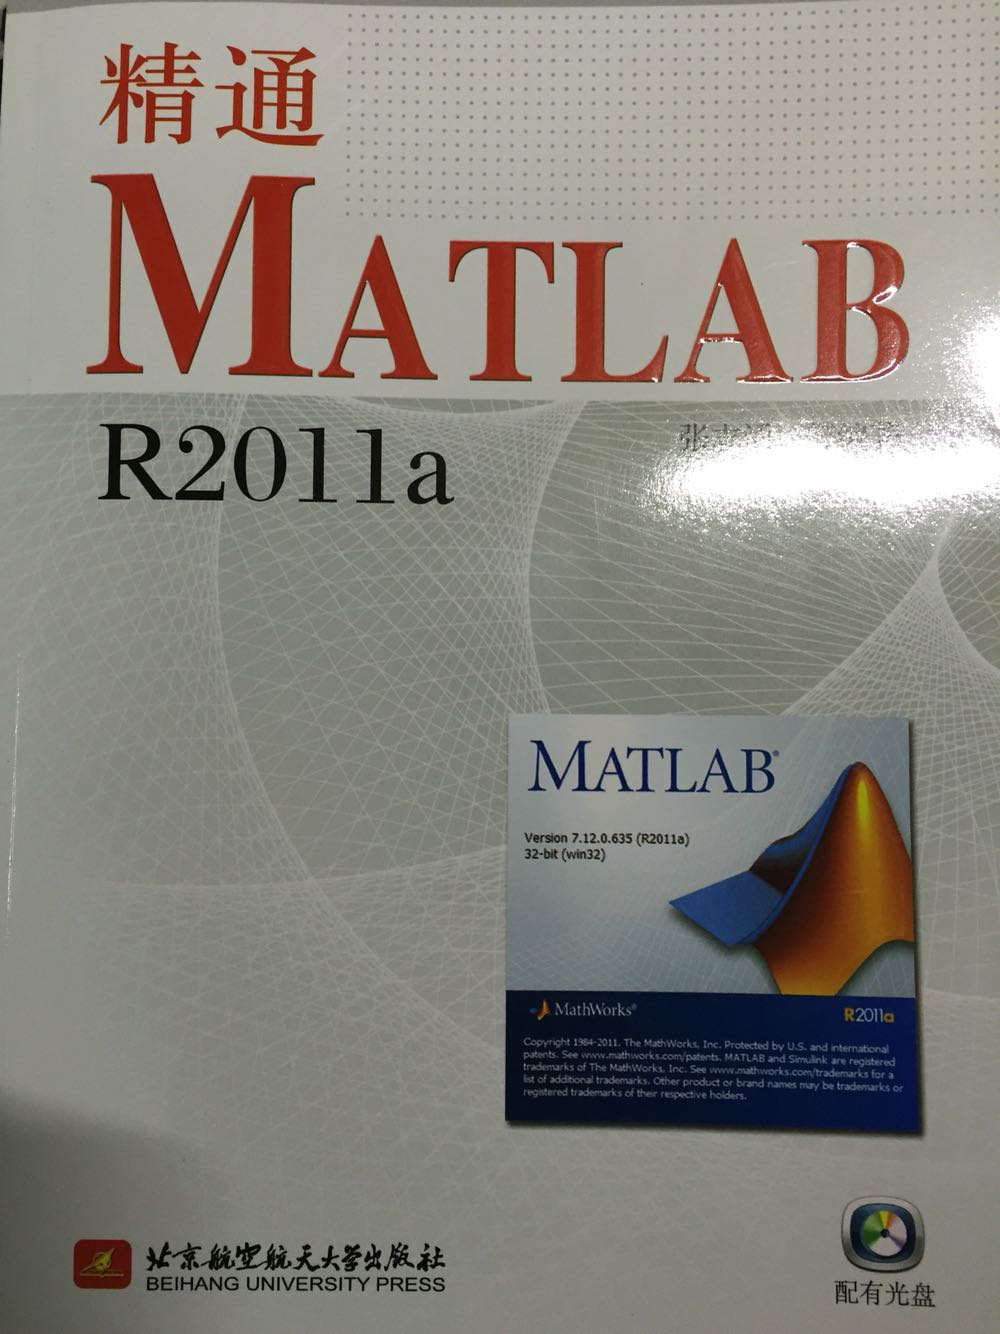 这是matlab的经典书籍